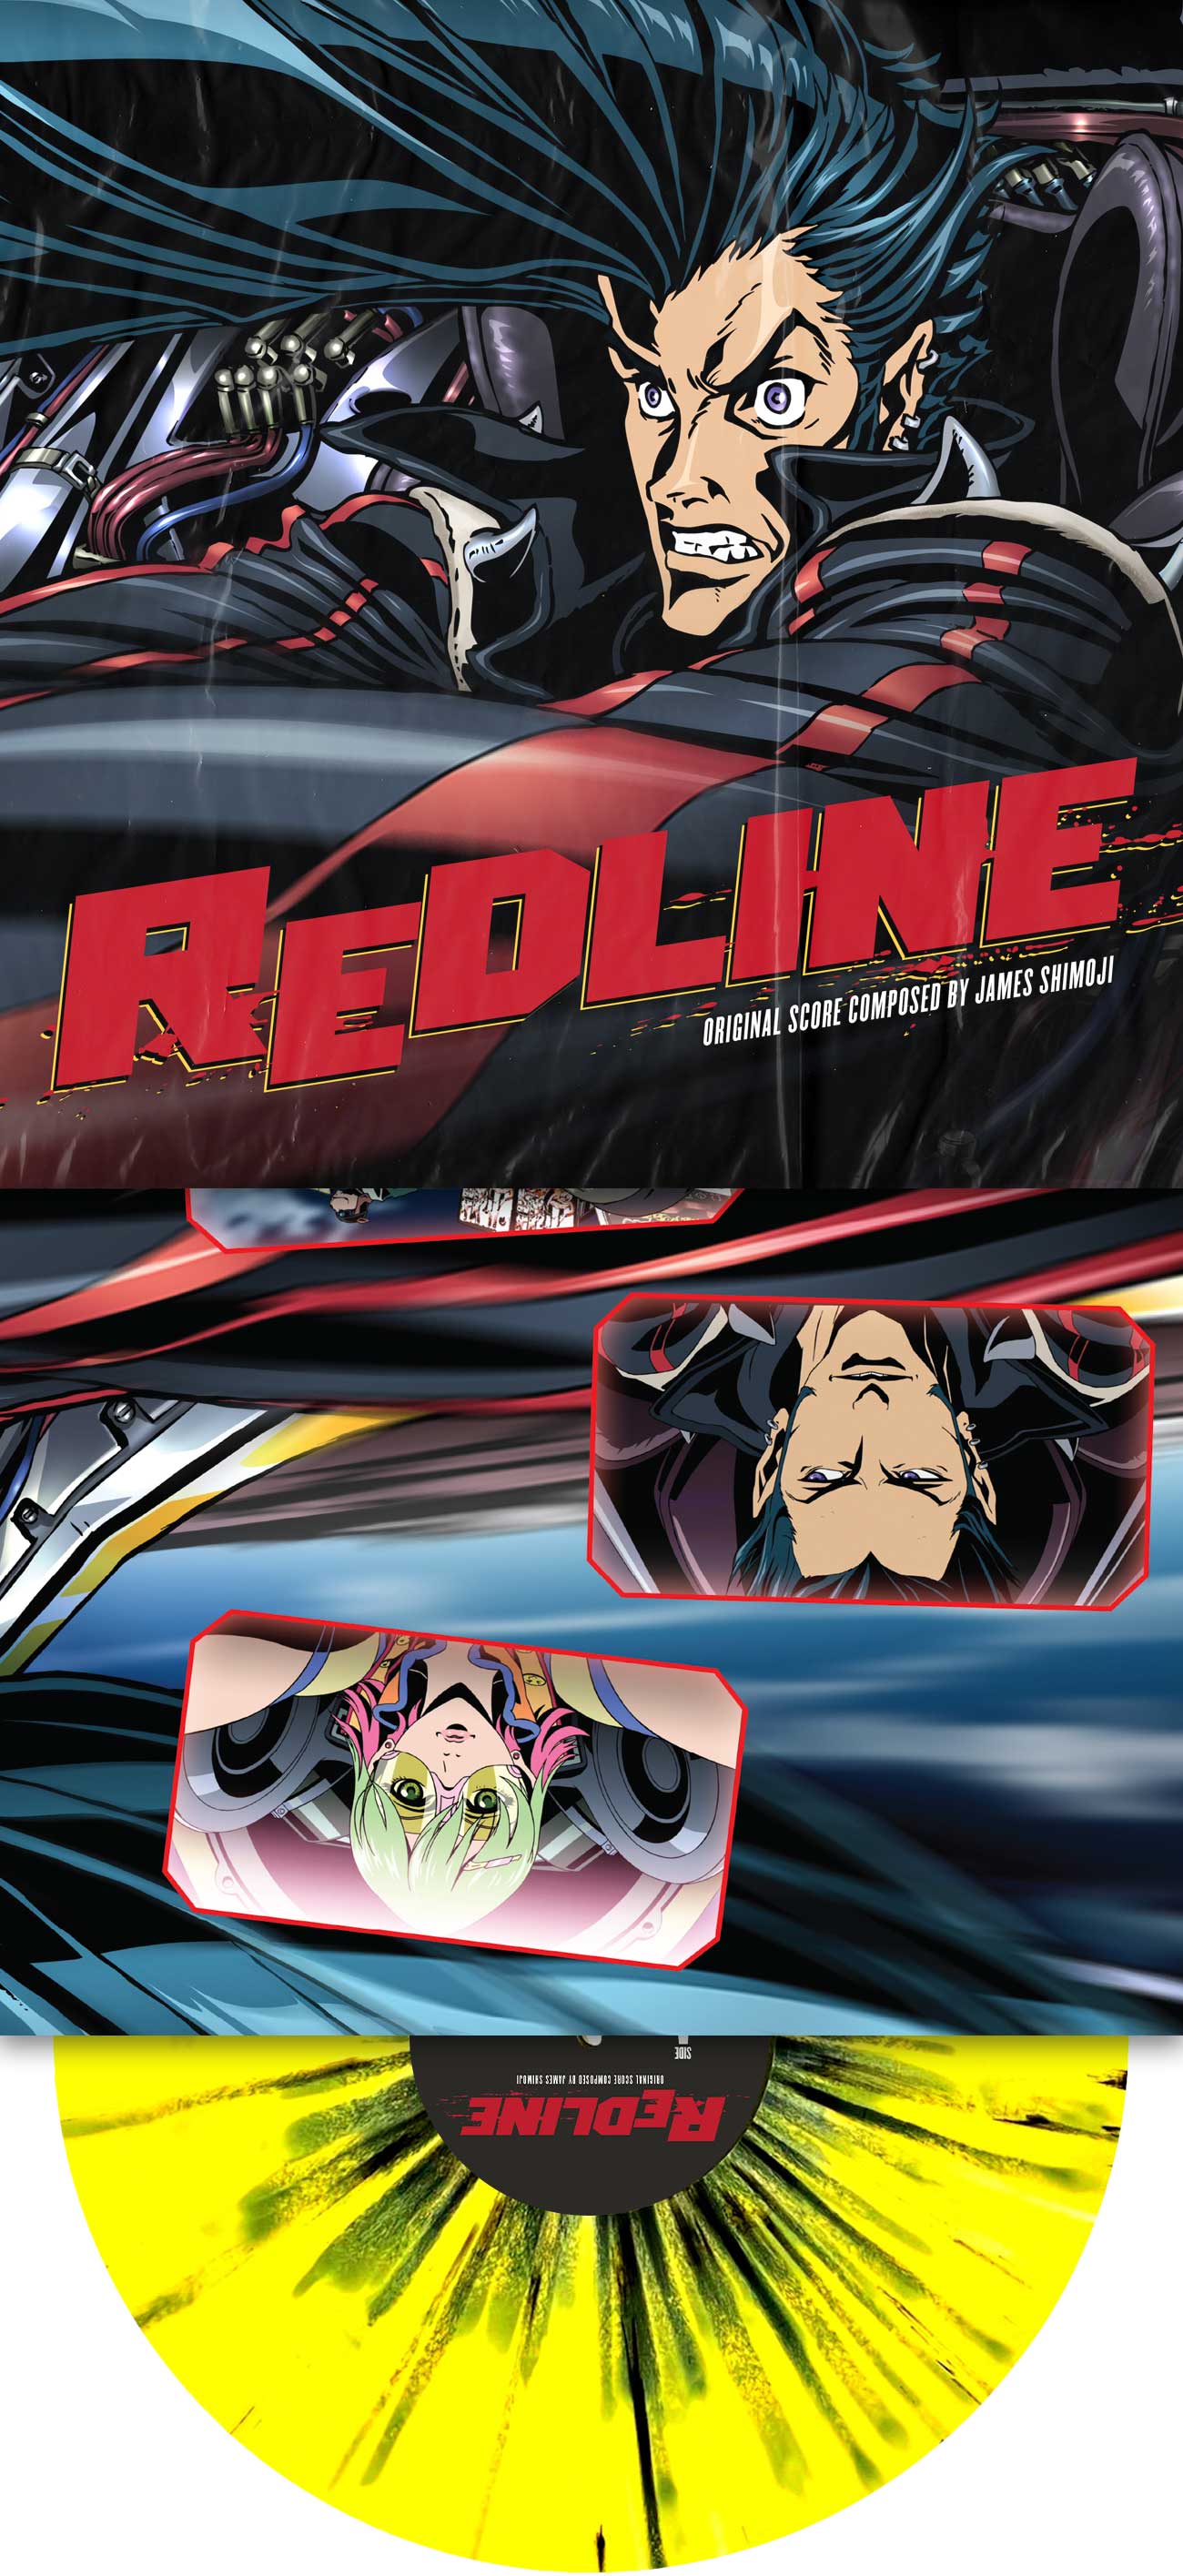 "Redline" Limited Edition 2XLP